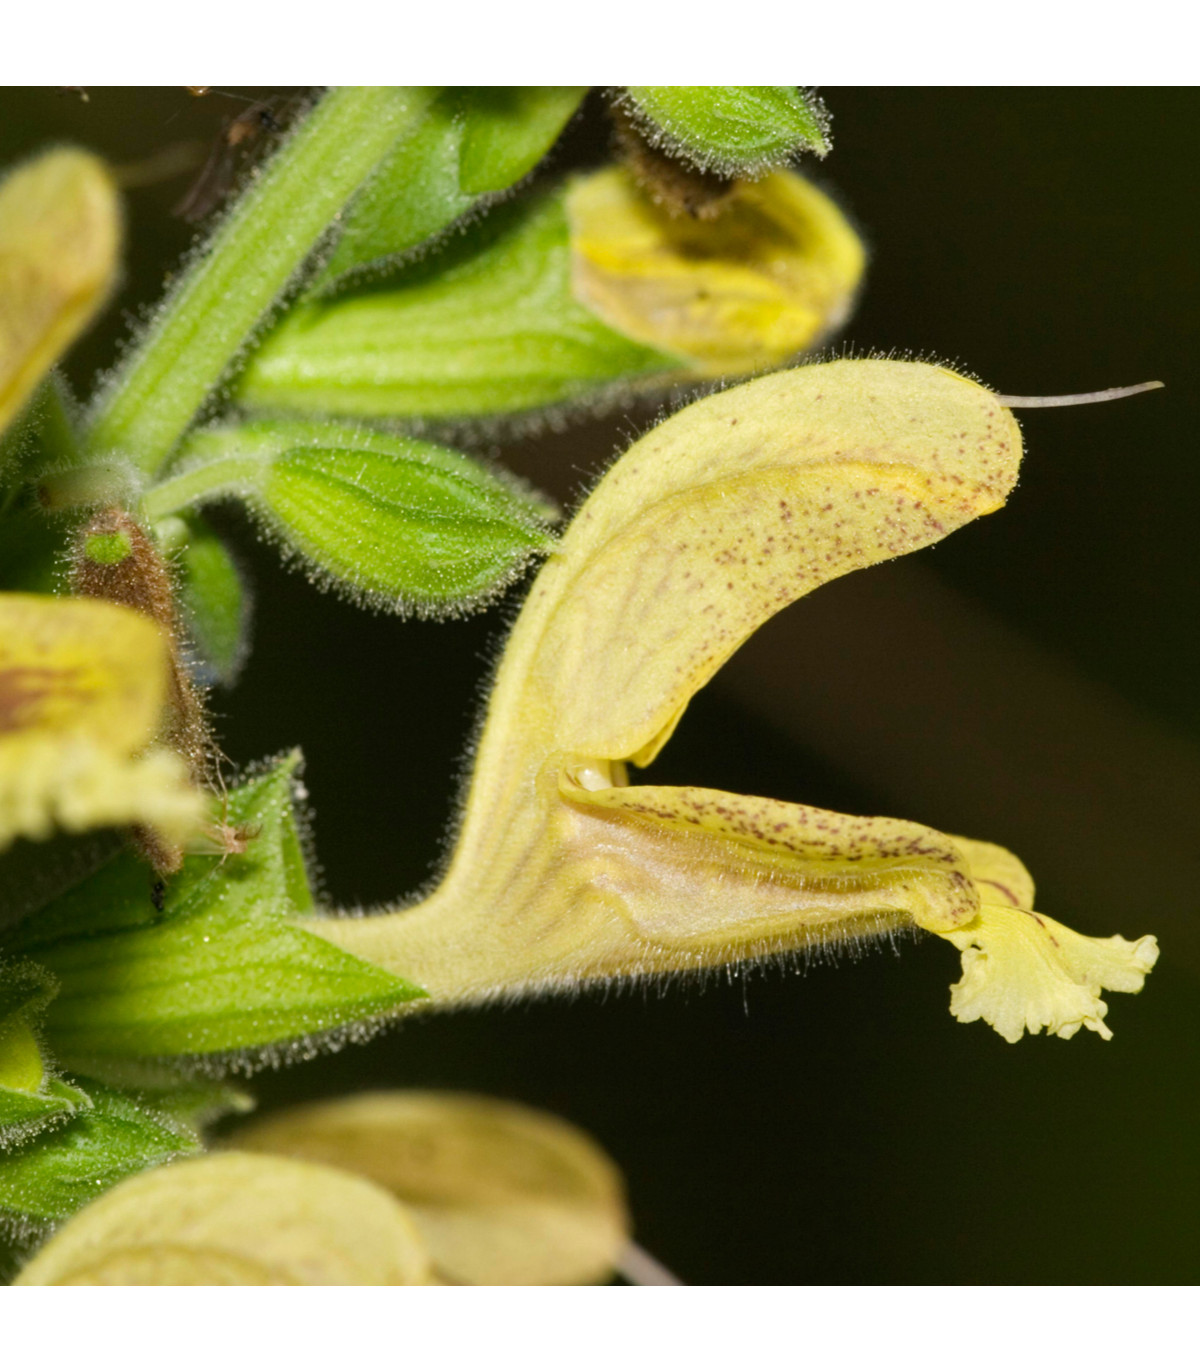 Šalvia žltá lepkavá - Salvia glutinosa - semená šalvie - 20 ks